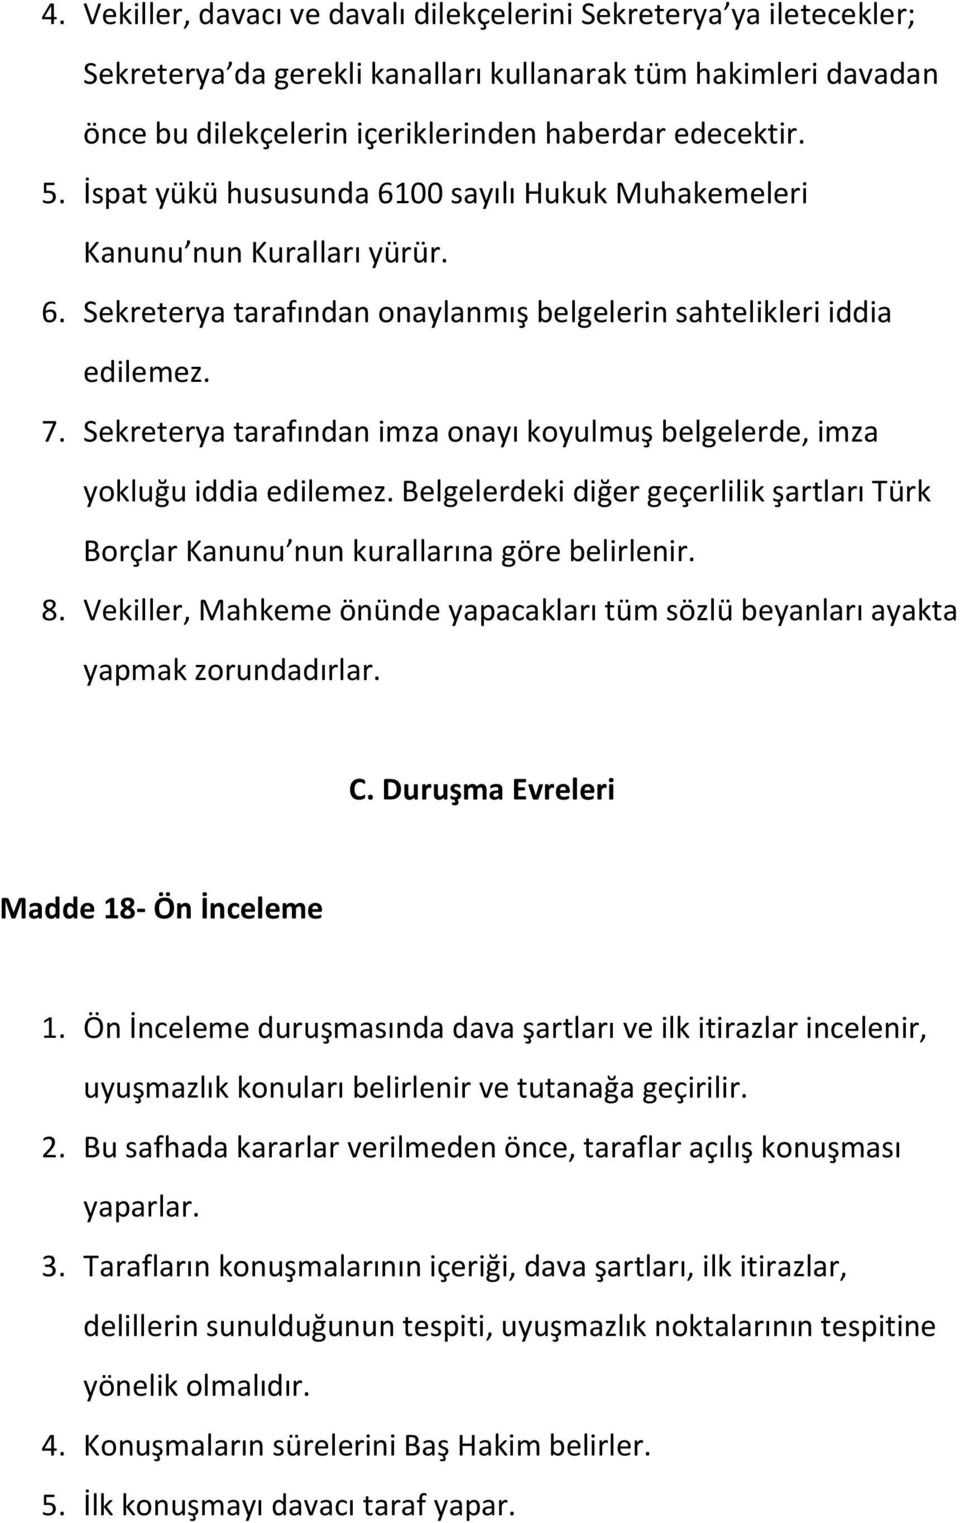 Sekreterya tarafından imza onayı koyulmuş belgelerde, imza yokluğu iddia edilemez. Belgelerdeki diğer geçerlilik şartları Türk Borçlar Kanunu nun kurallarına göre belirlenir. 8.